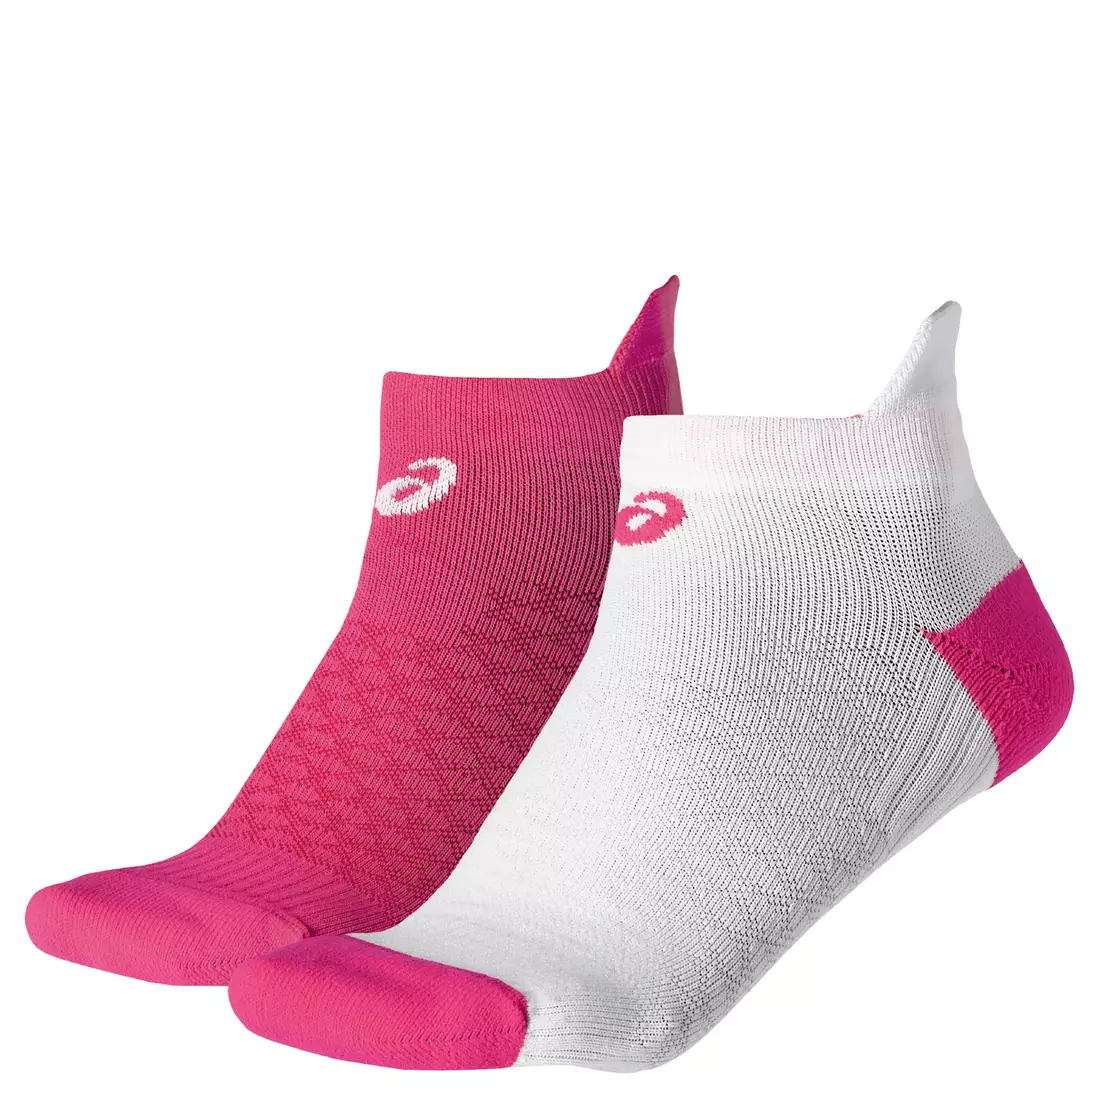 ASICS women's sports socks 2-pack 130887-0688